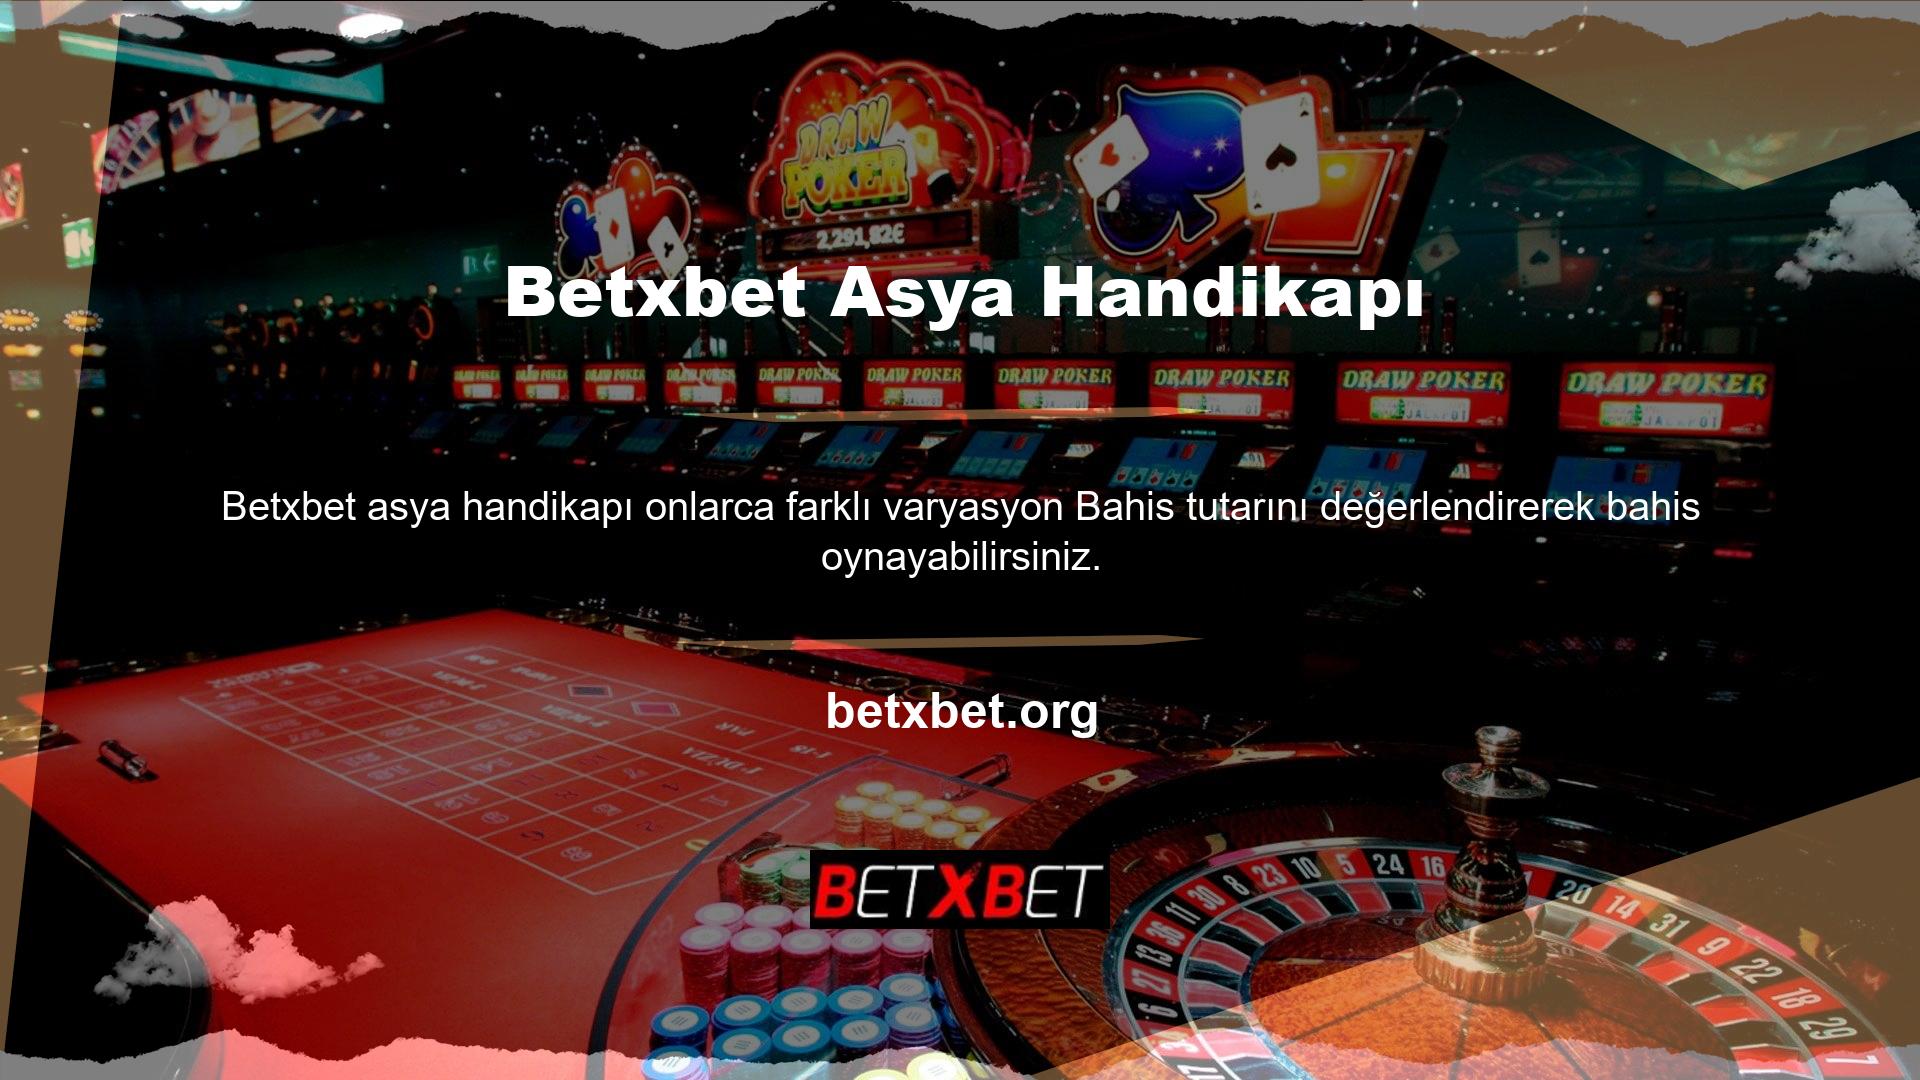 Betxbet yeni adı, çevrimiçi, mobil ve masaüstü oyuna olanak tanıyan çok kanallı bir platform olan sanal futboldur